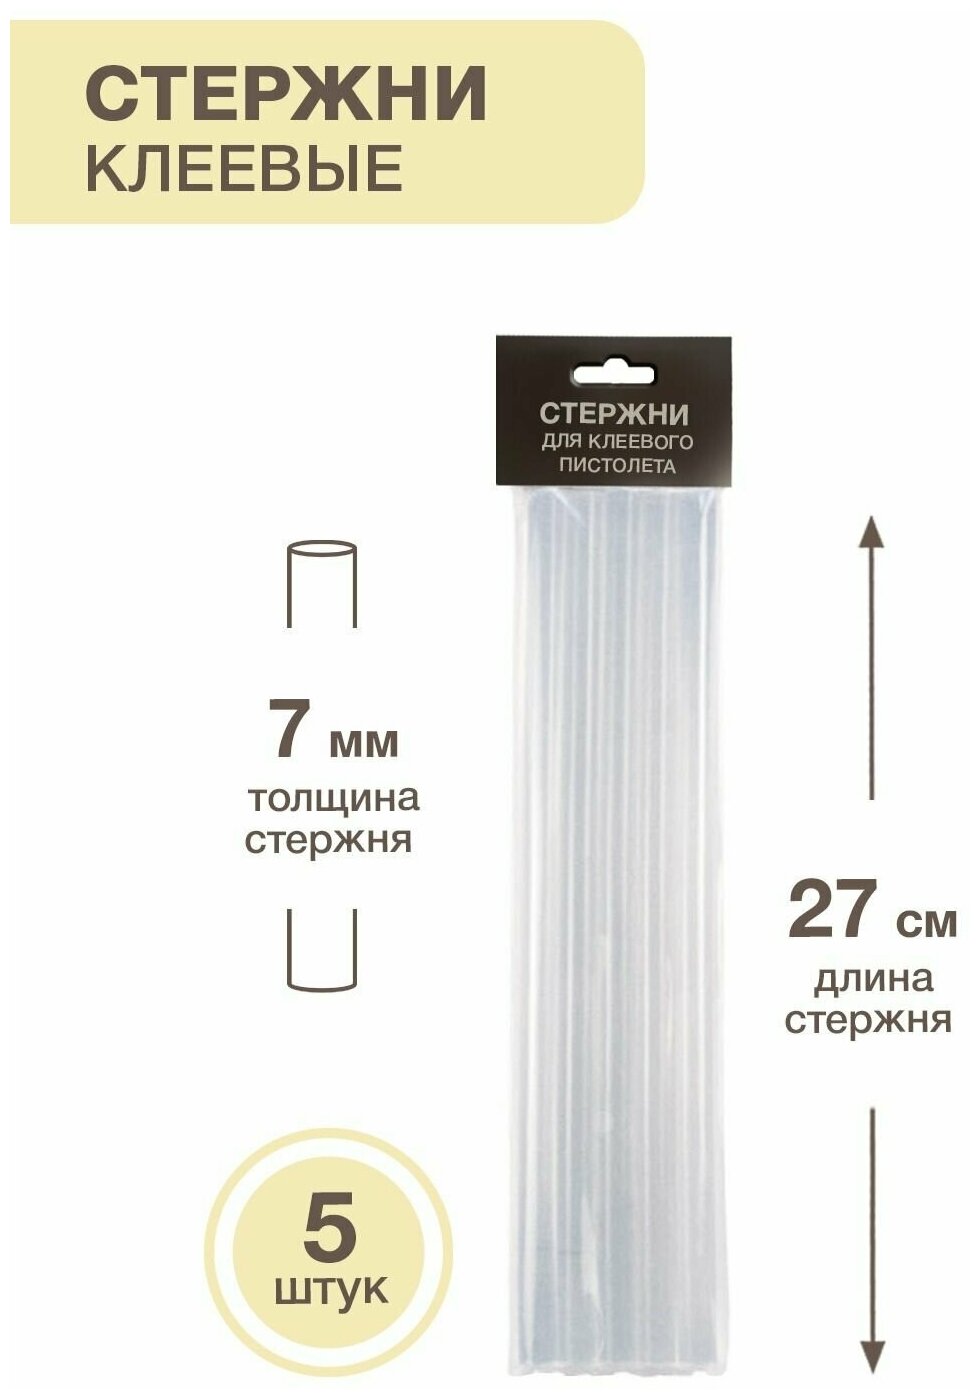 Клеевые стержни для клеевого термопистолета -5 штук, длина: 27см, диаметр: 7мм - фотография № 2